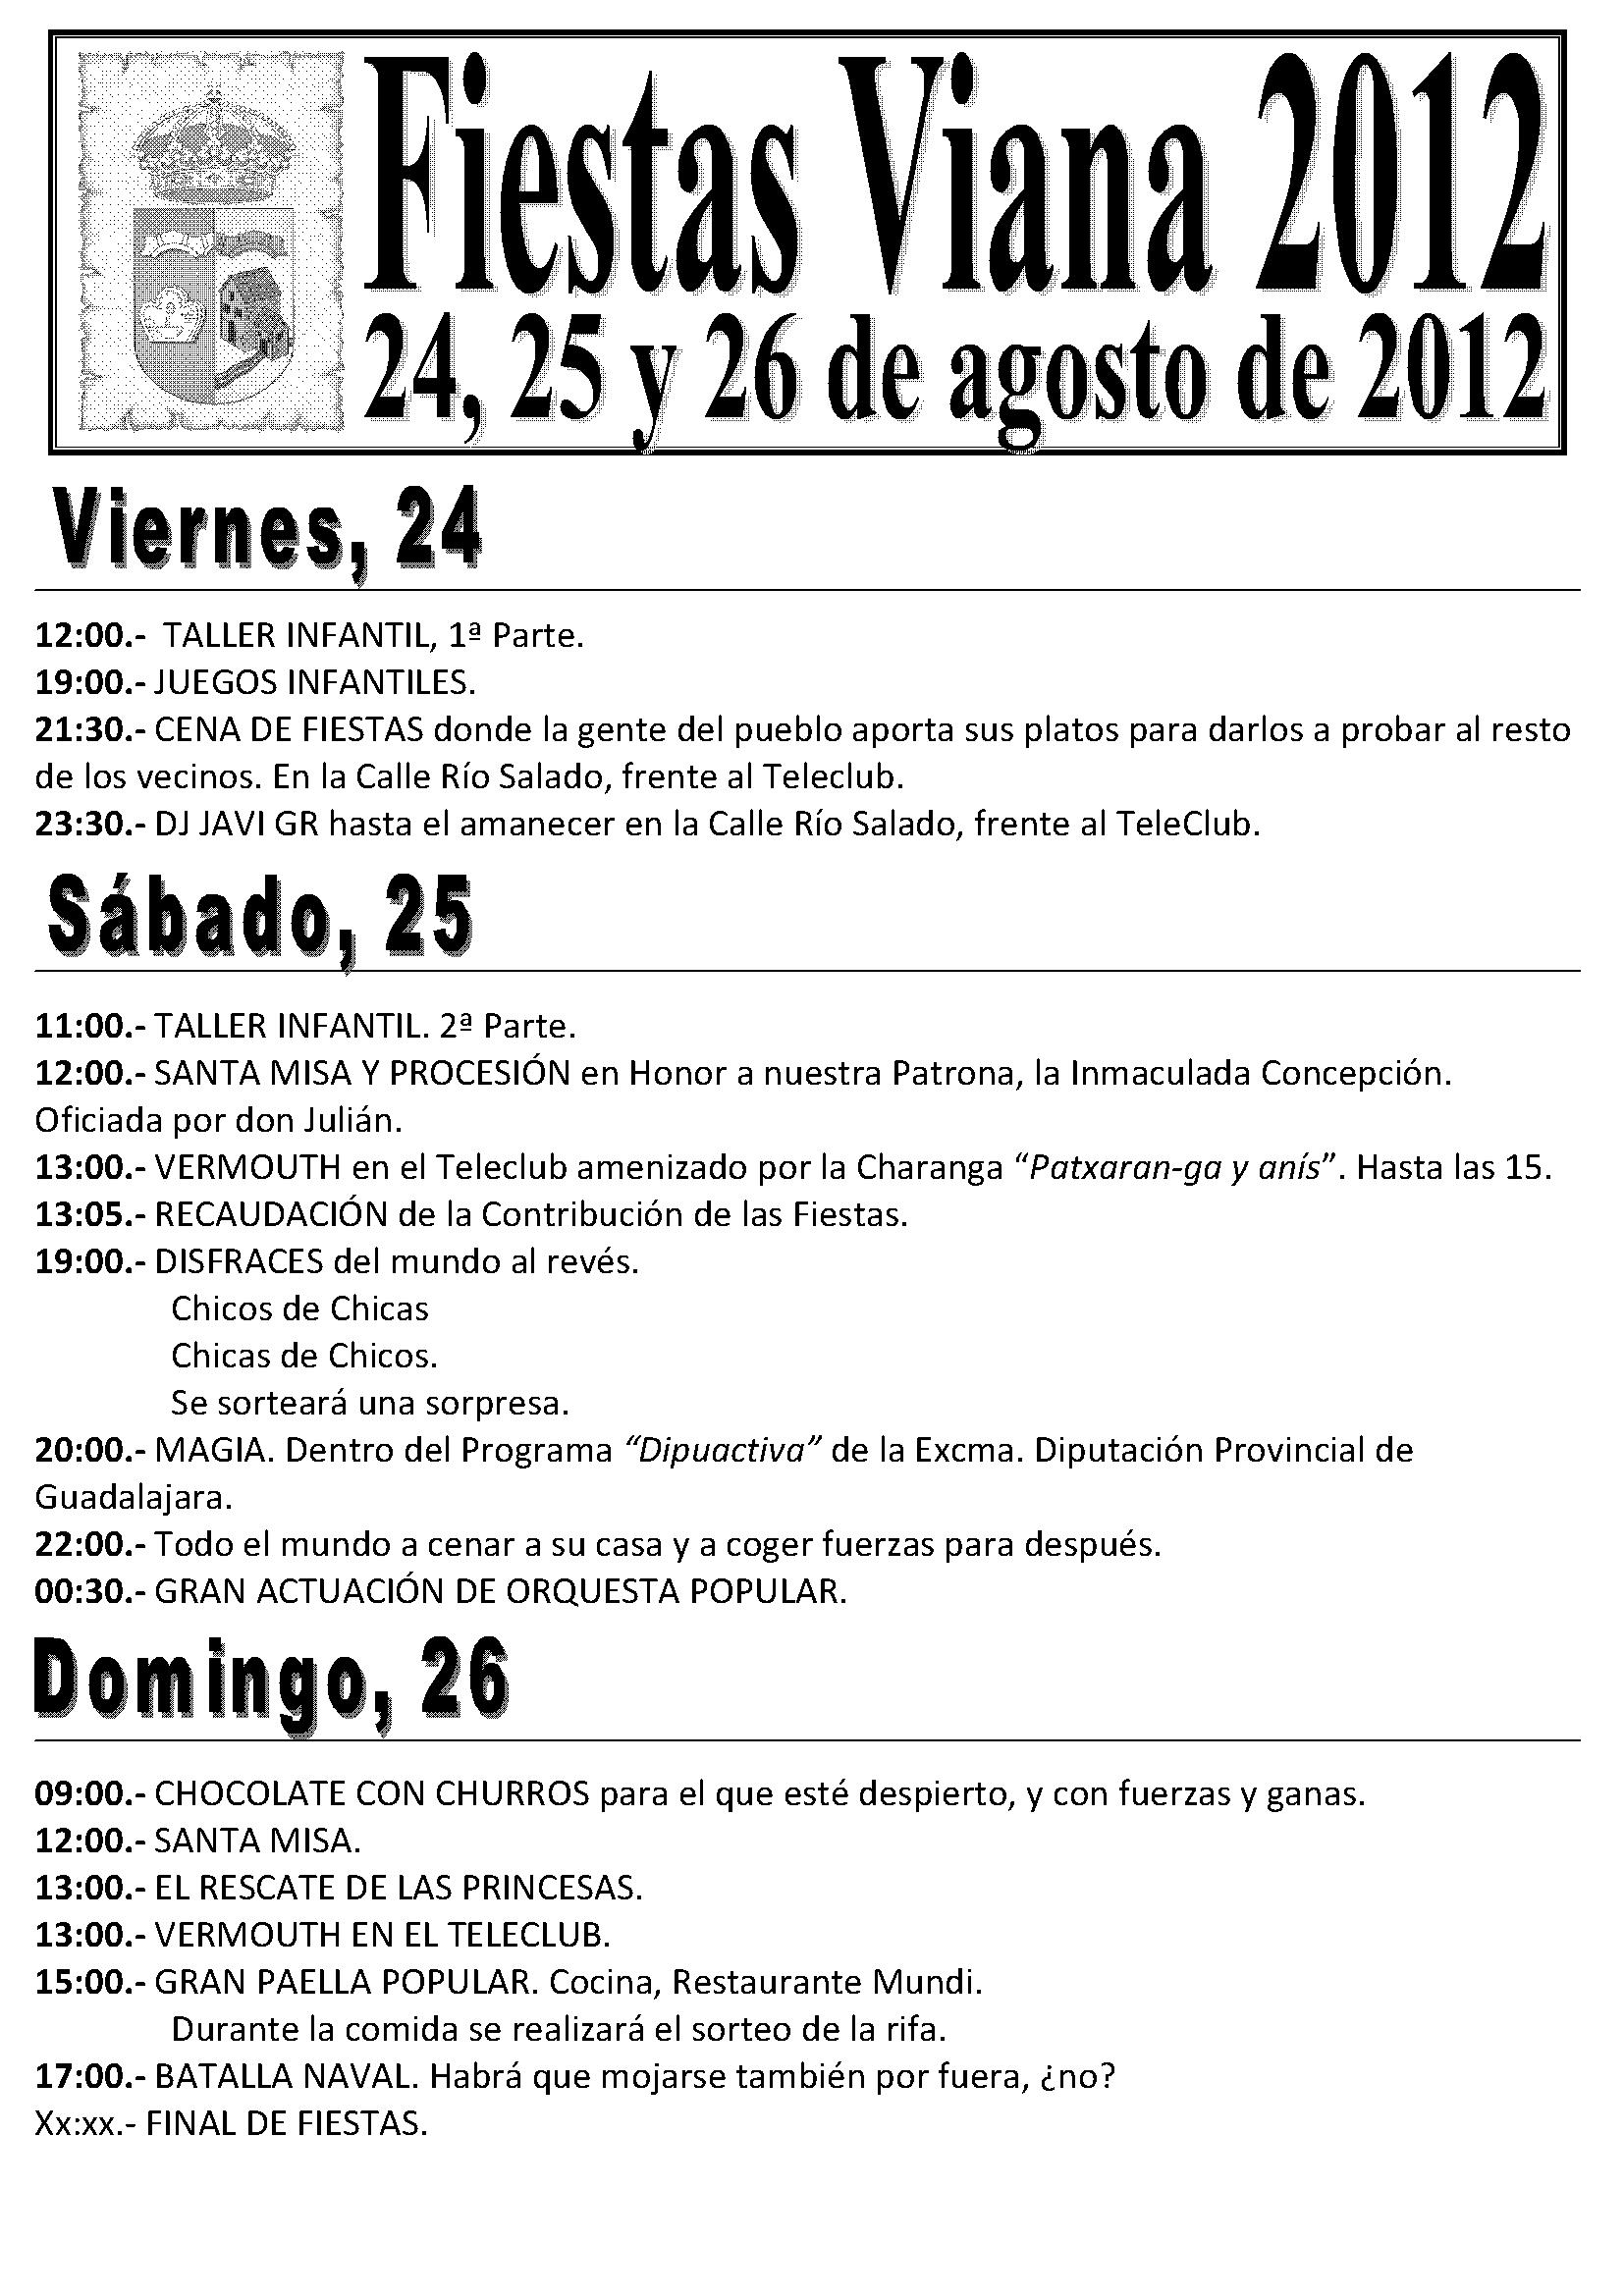 Programa de Fiestas Viana 2012